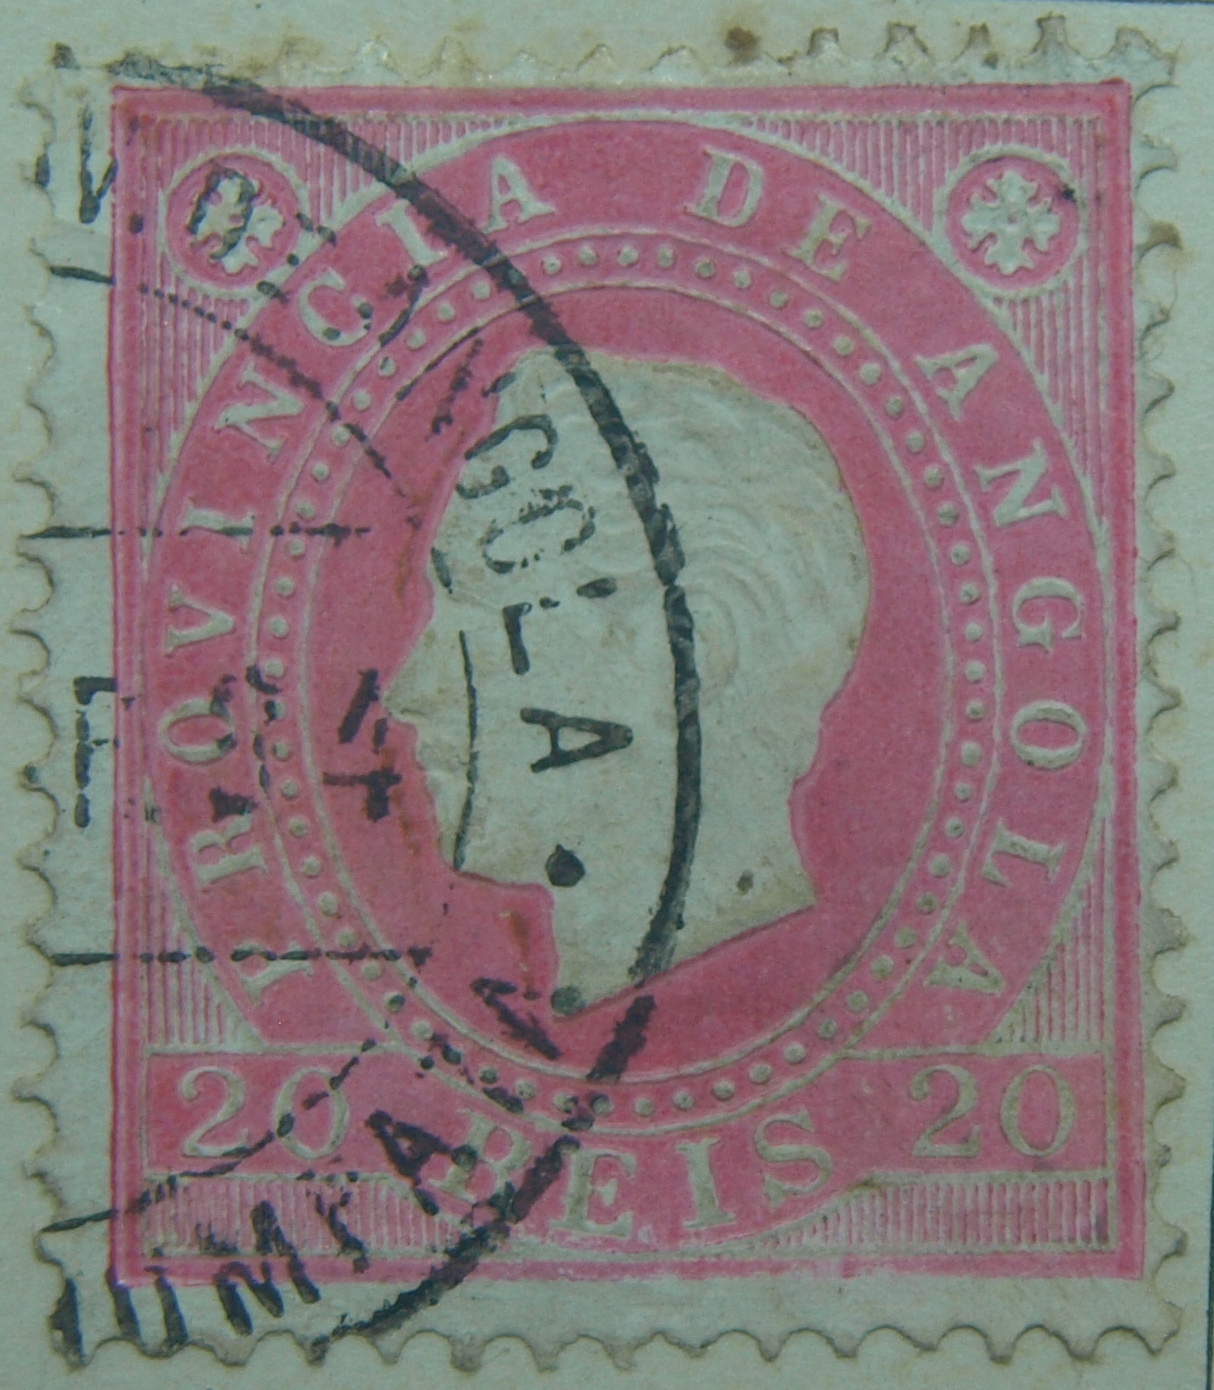 Angola stamps